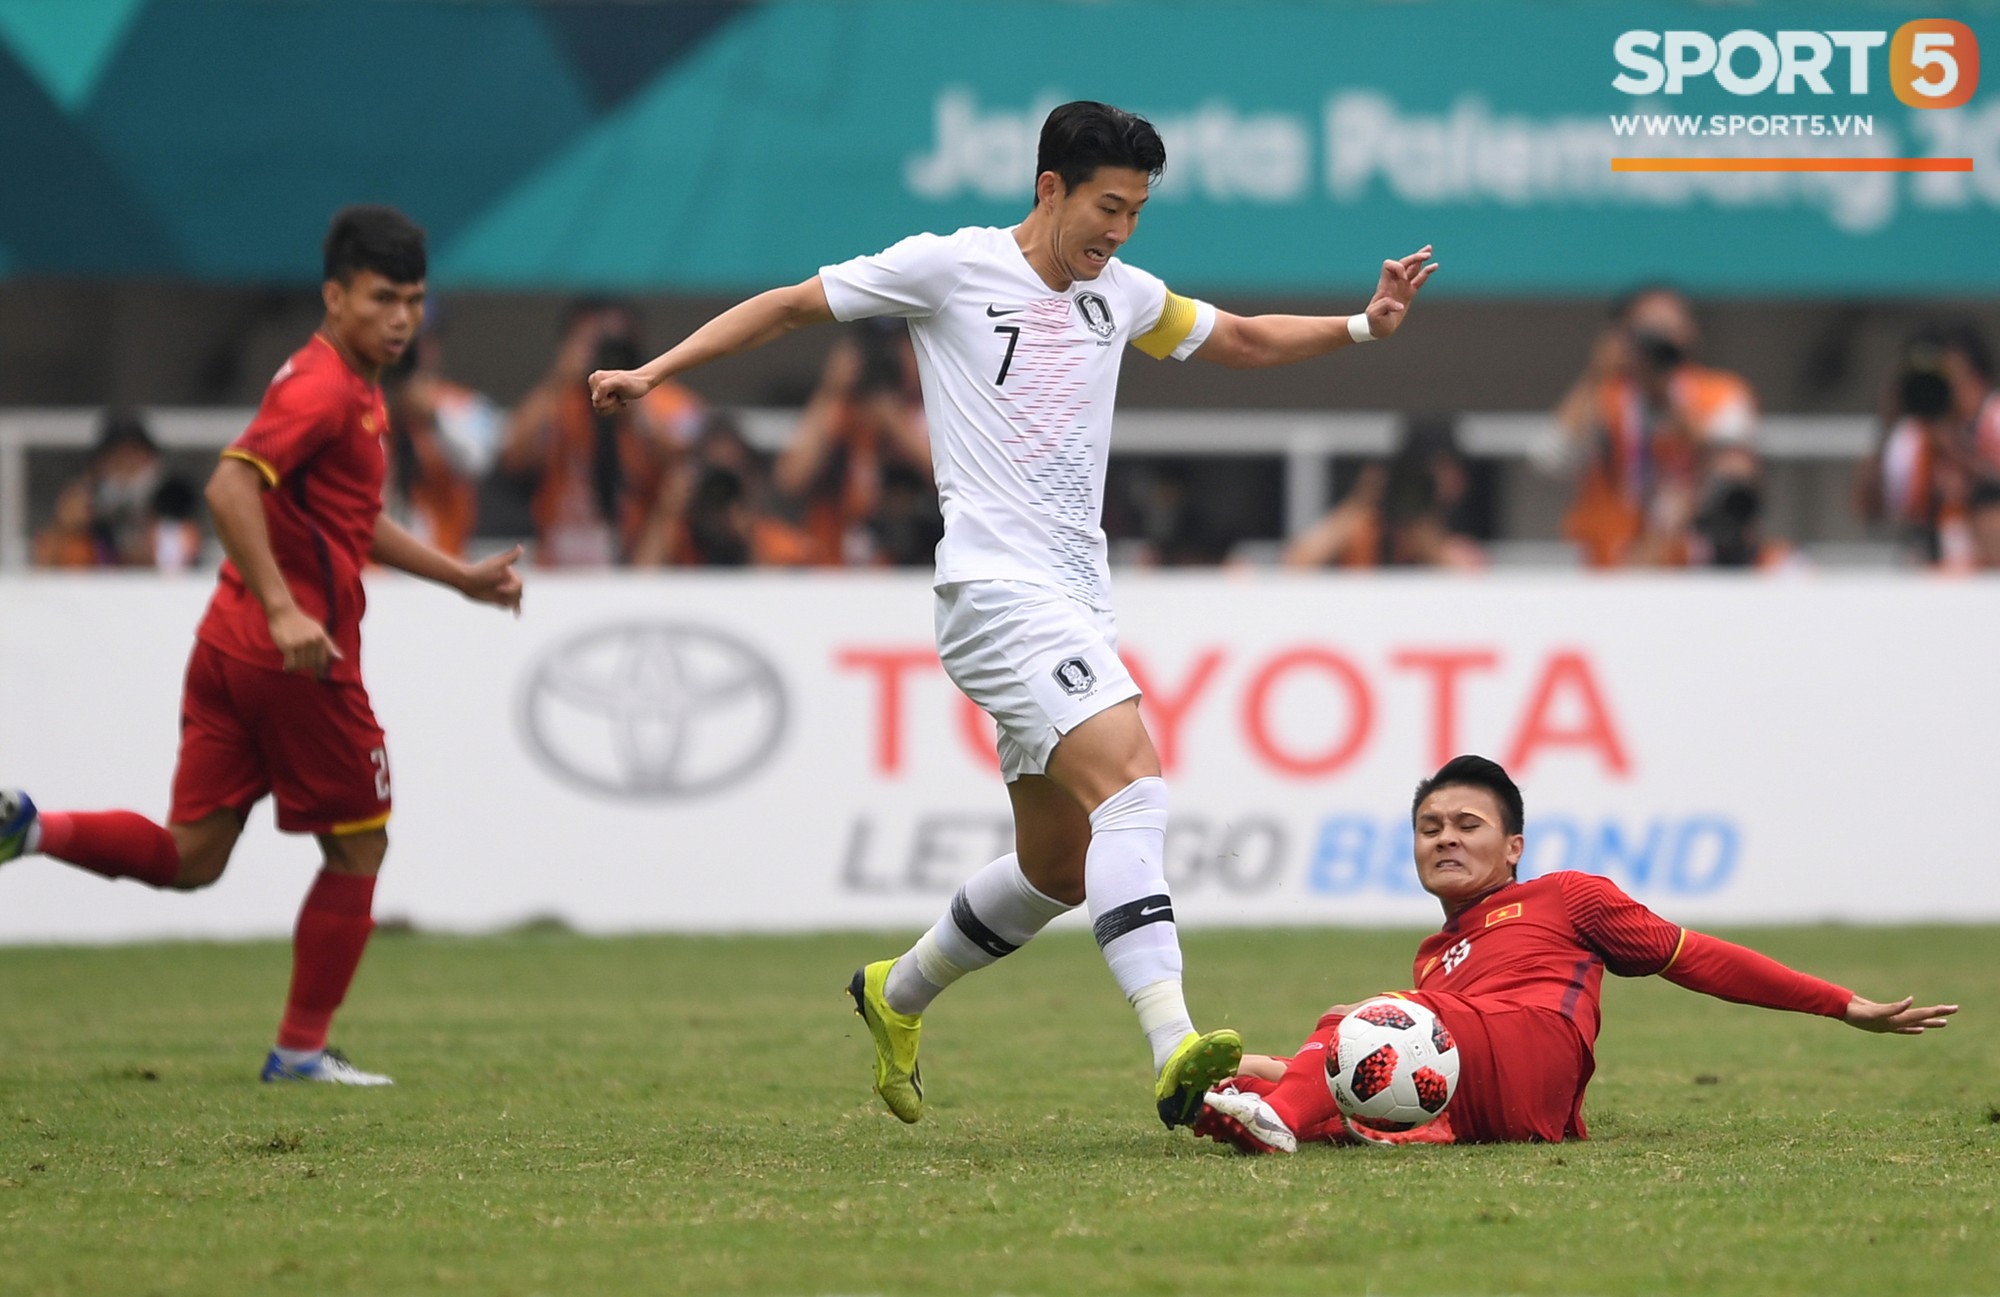 Báo Hàn coi Việt Nam là đối thủ khó chịu tại Vòng loại World Cup 2022 - Ảnh 1.